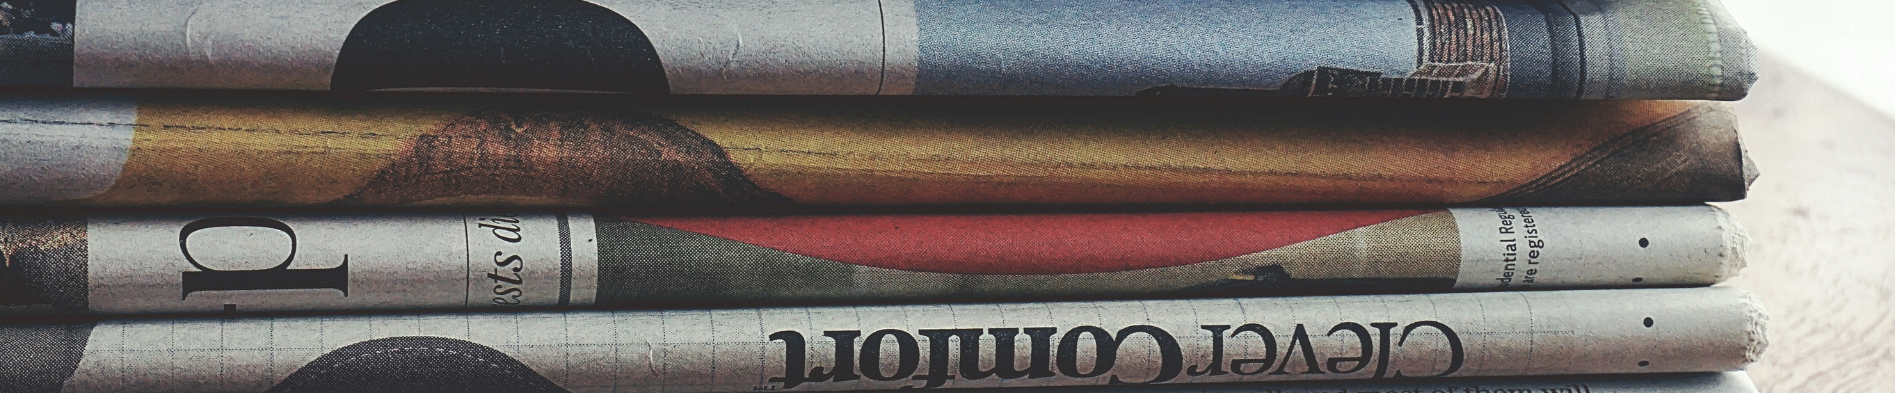 Zeitungen in einer Nahaufnahme